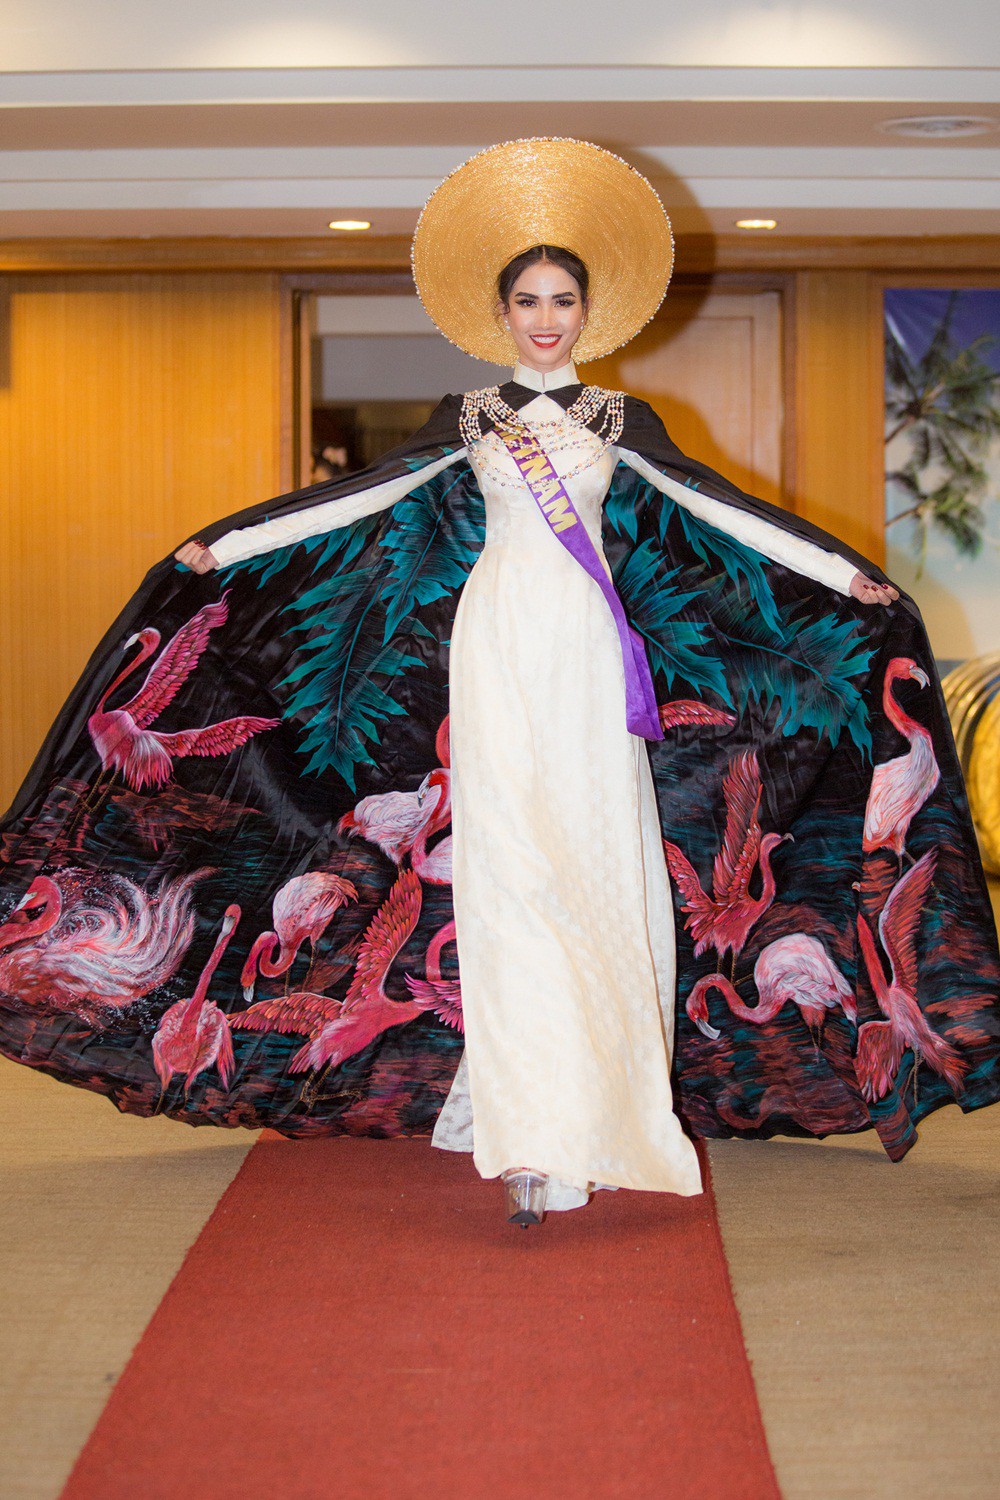 Phan Thi Mơ lọt top 10 phần thi trang phục của Hoa hậu Đại sứ Du lịch Thế giới 2018 - Ảnh 1.